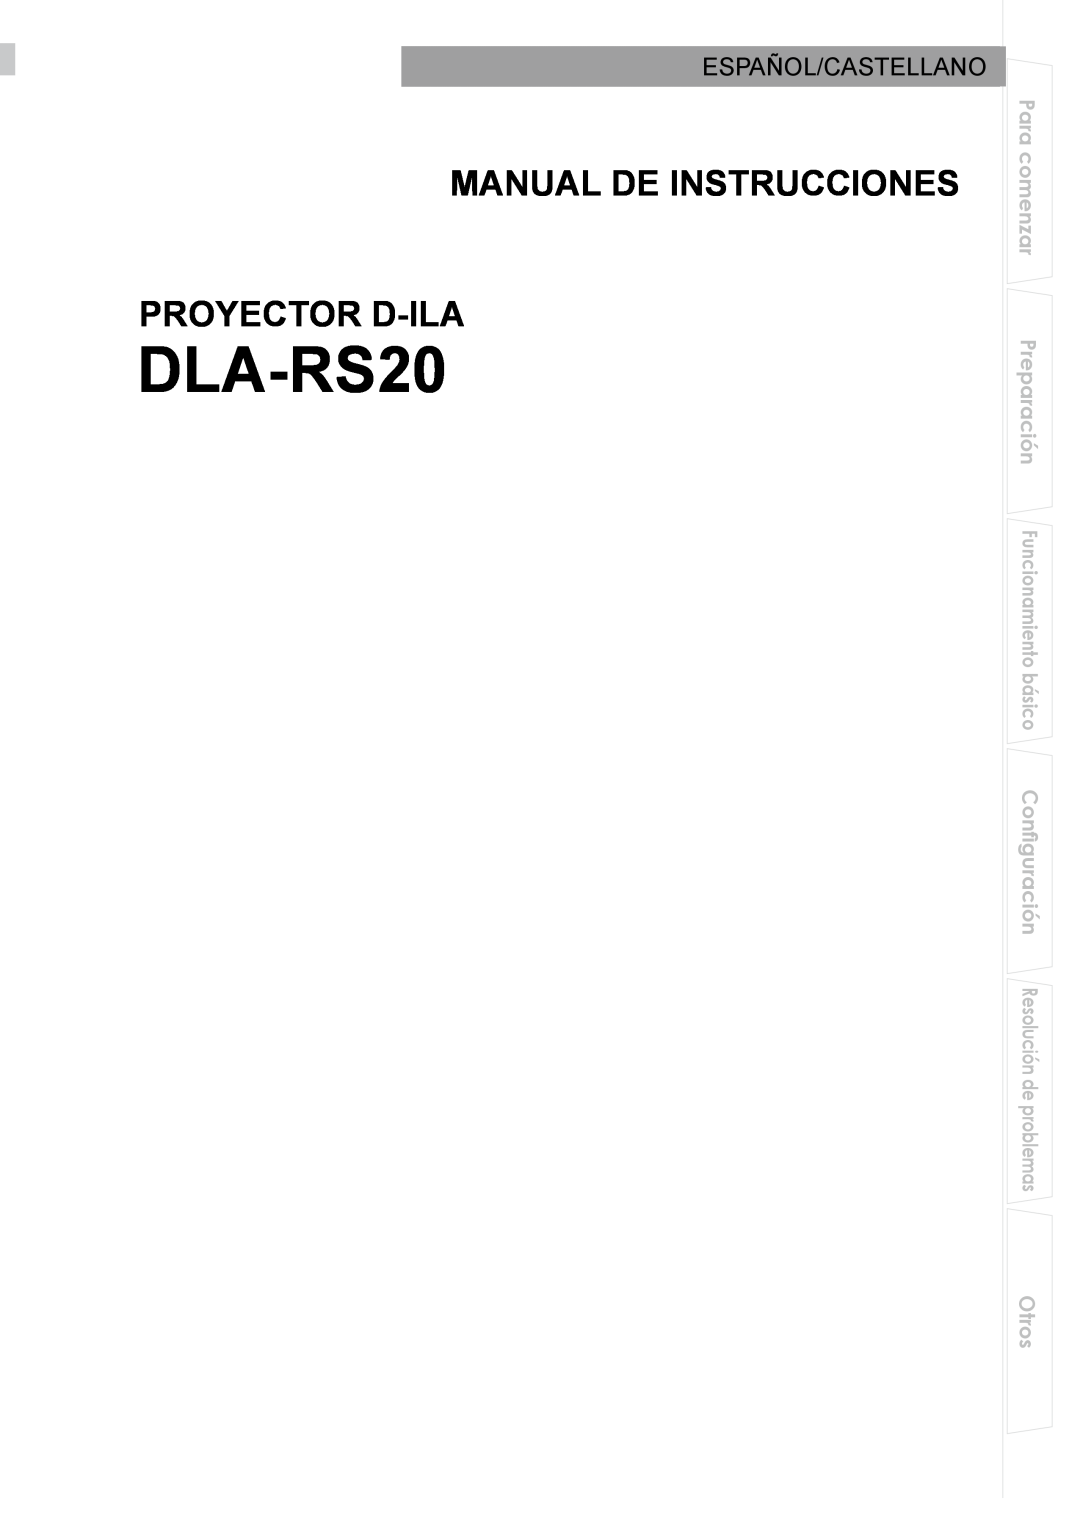 JVC PB006596599-0 manual Manual De Instrucciones, Español/Castellano, DLA-RS20, Proyector D-Ila, Para comenzar, Otros 